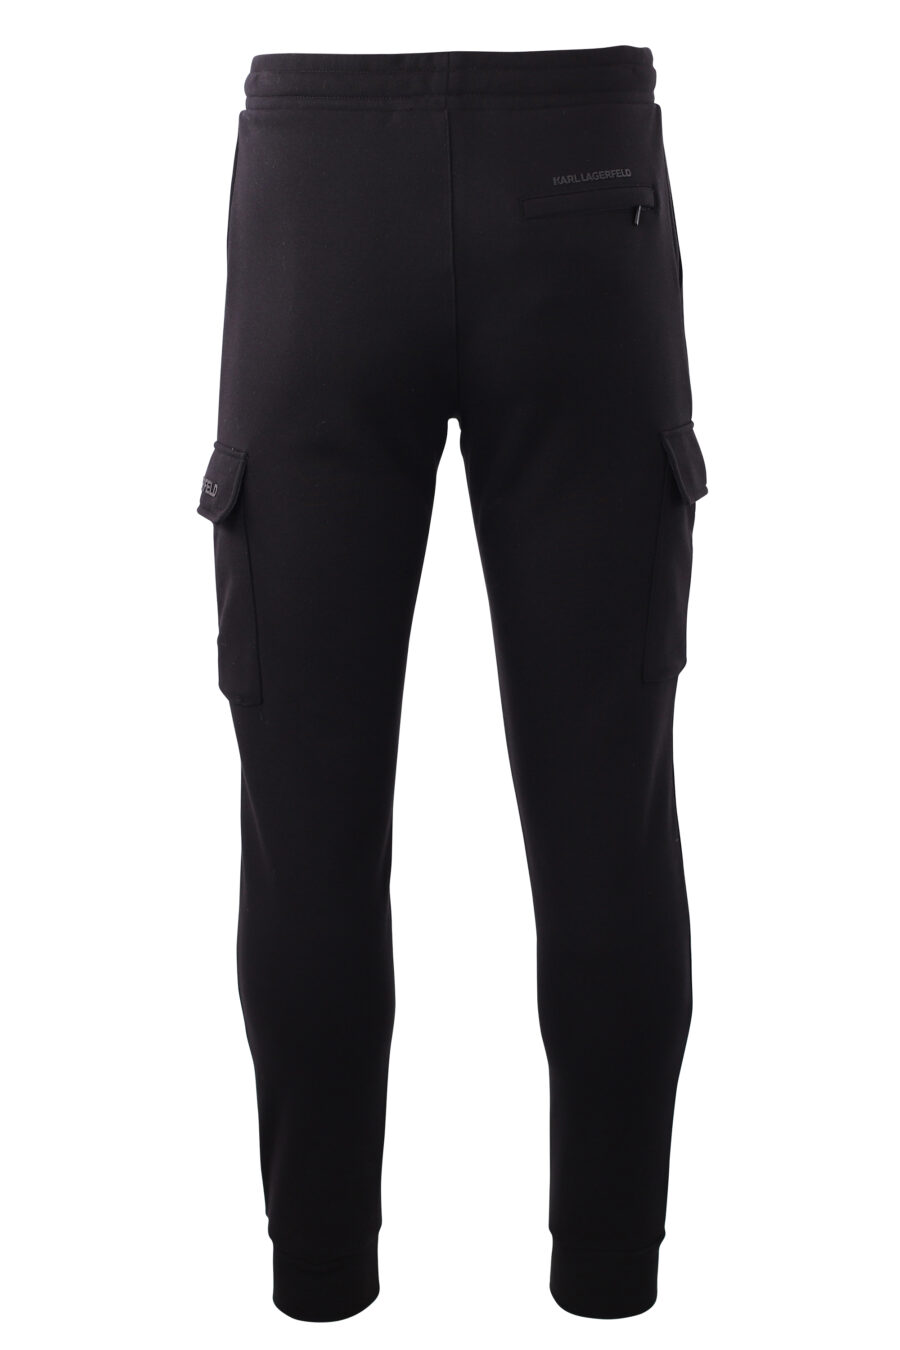 Pantalón de chandal negro con bolsillos laterales - IMG 8582